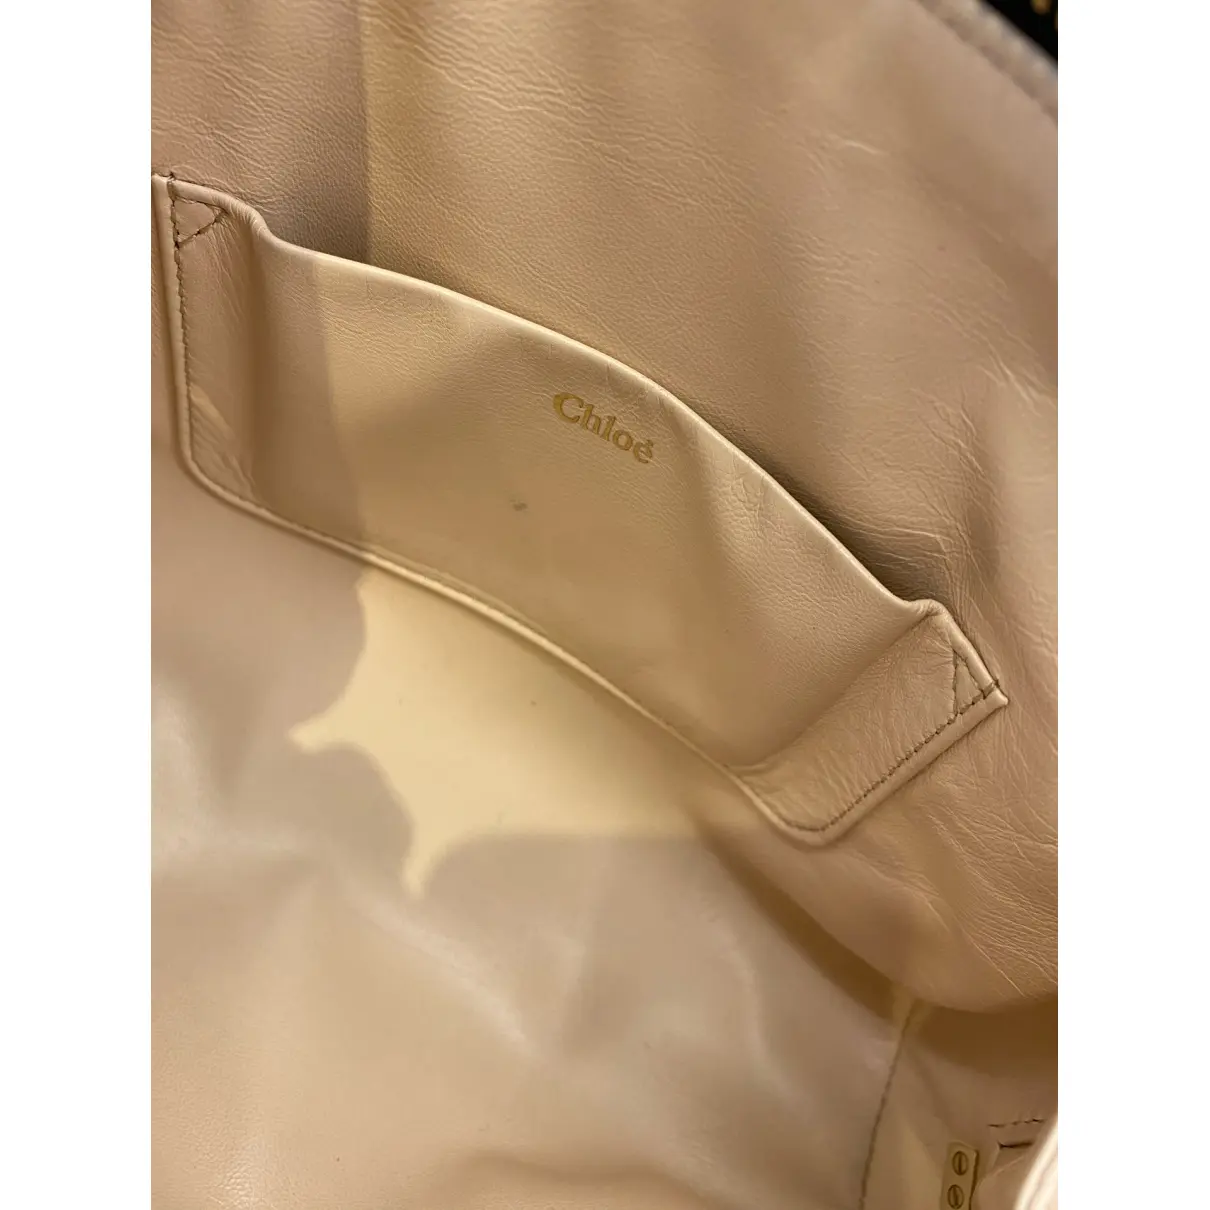 Luxury Chloé Clutch bags Women